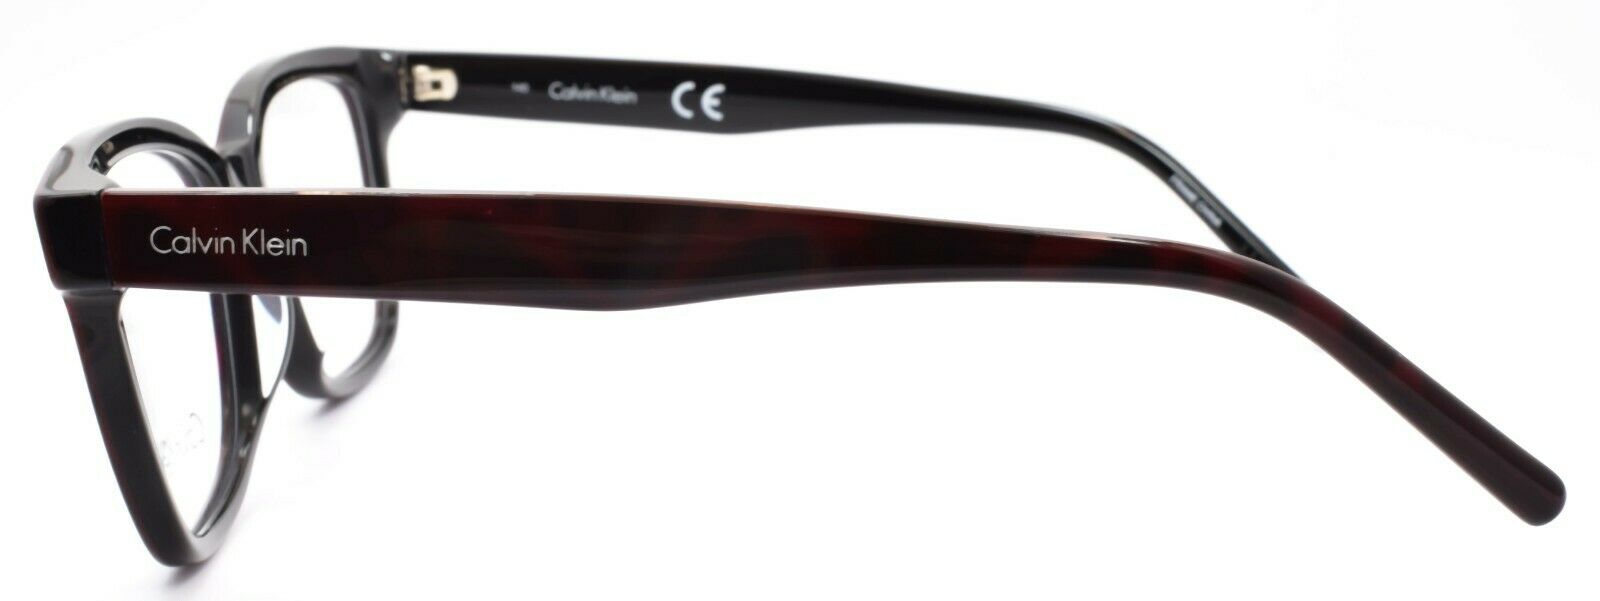 3-Calvin Klein CK5961 623 Women's Eyeglasses Frames 53-16-140 Red Snake-750779111062-IKSpecs